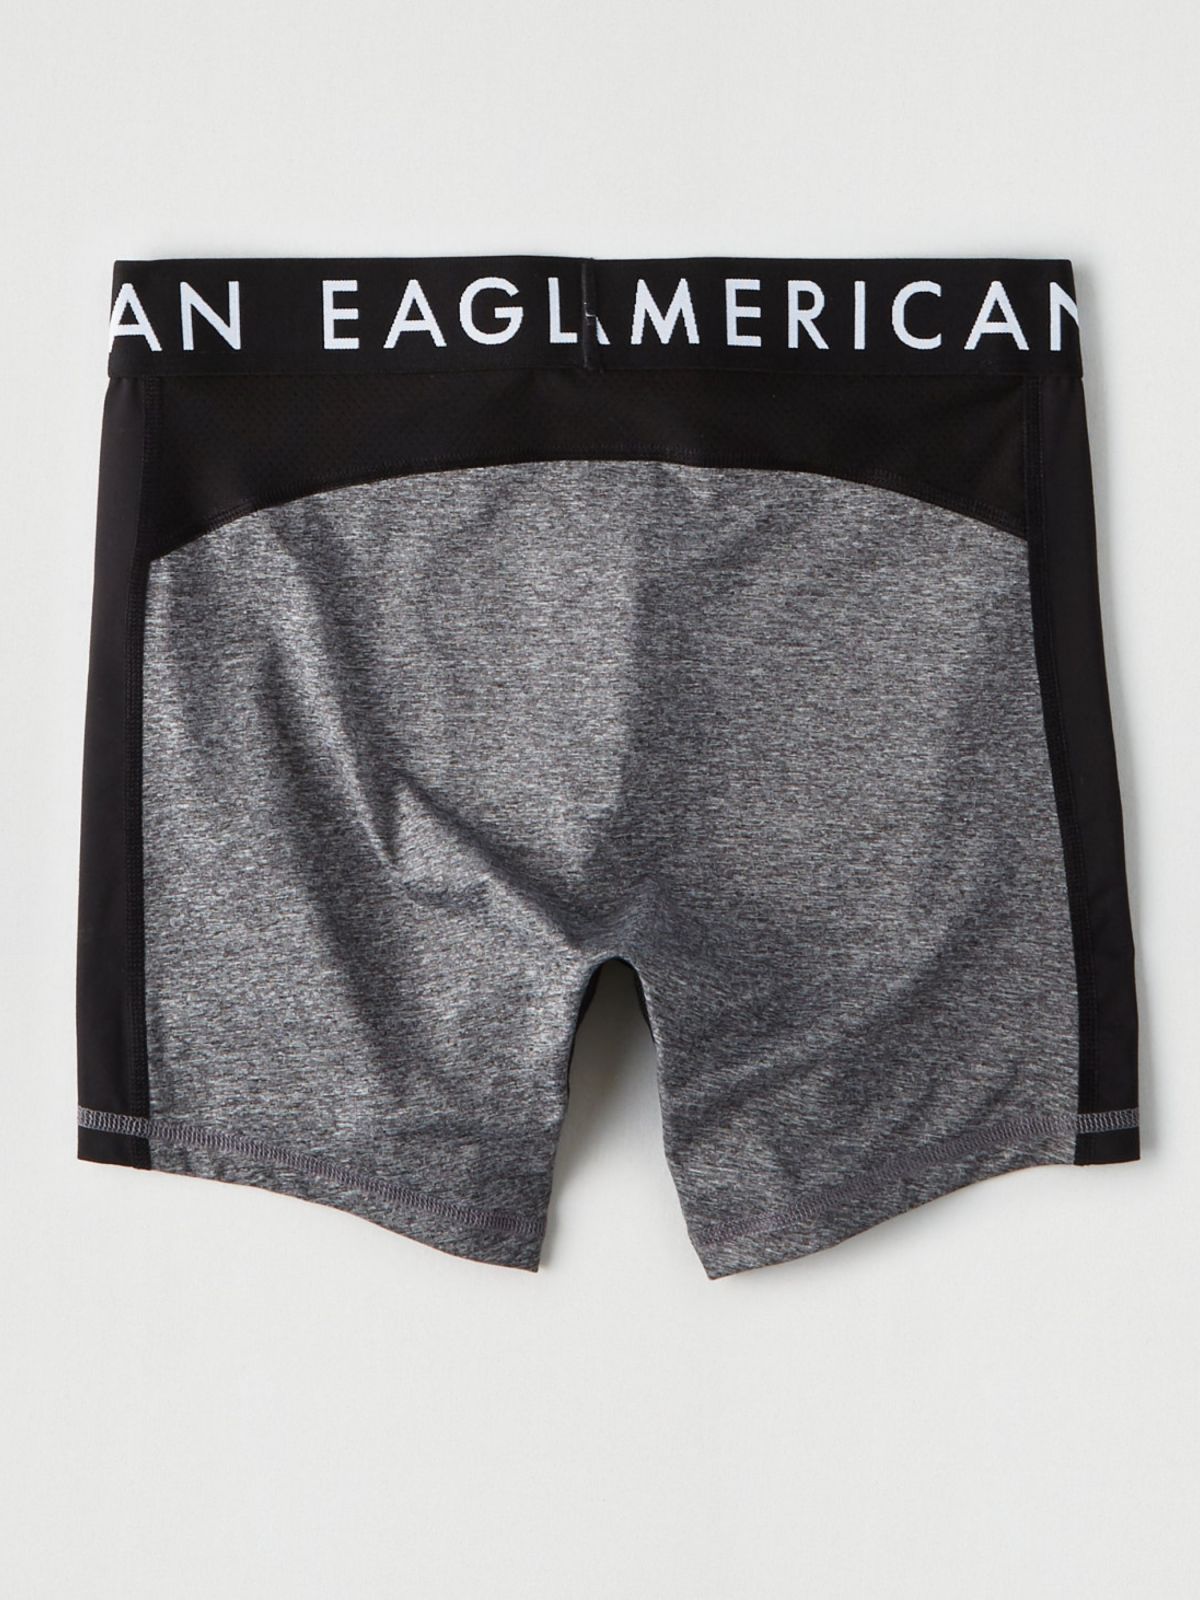  תחתוני בוקסר ג'רסי לונגליין עם לוגו / גברים של AMERICAN EAGLE